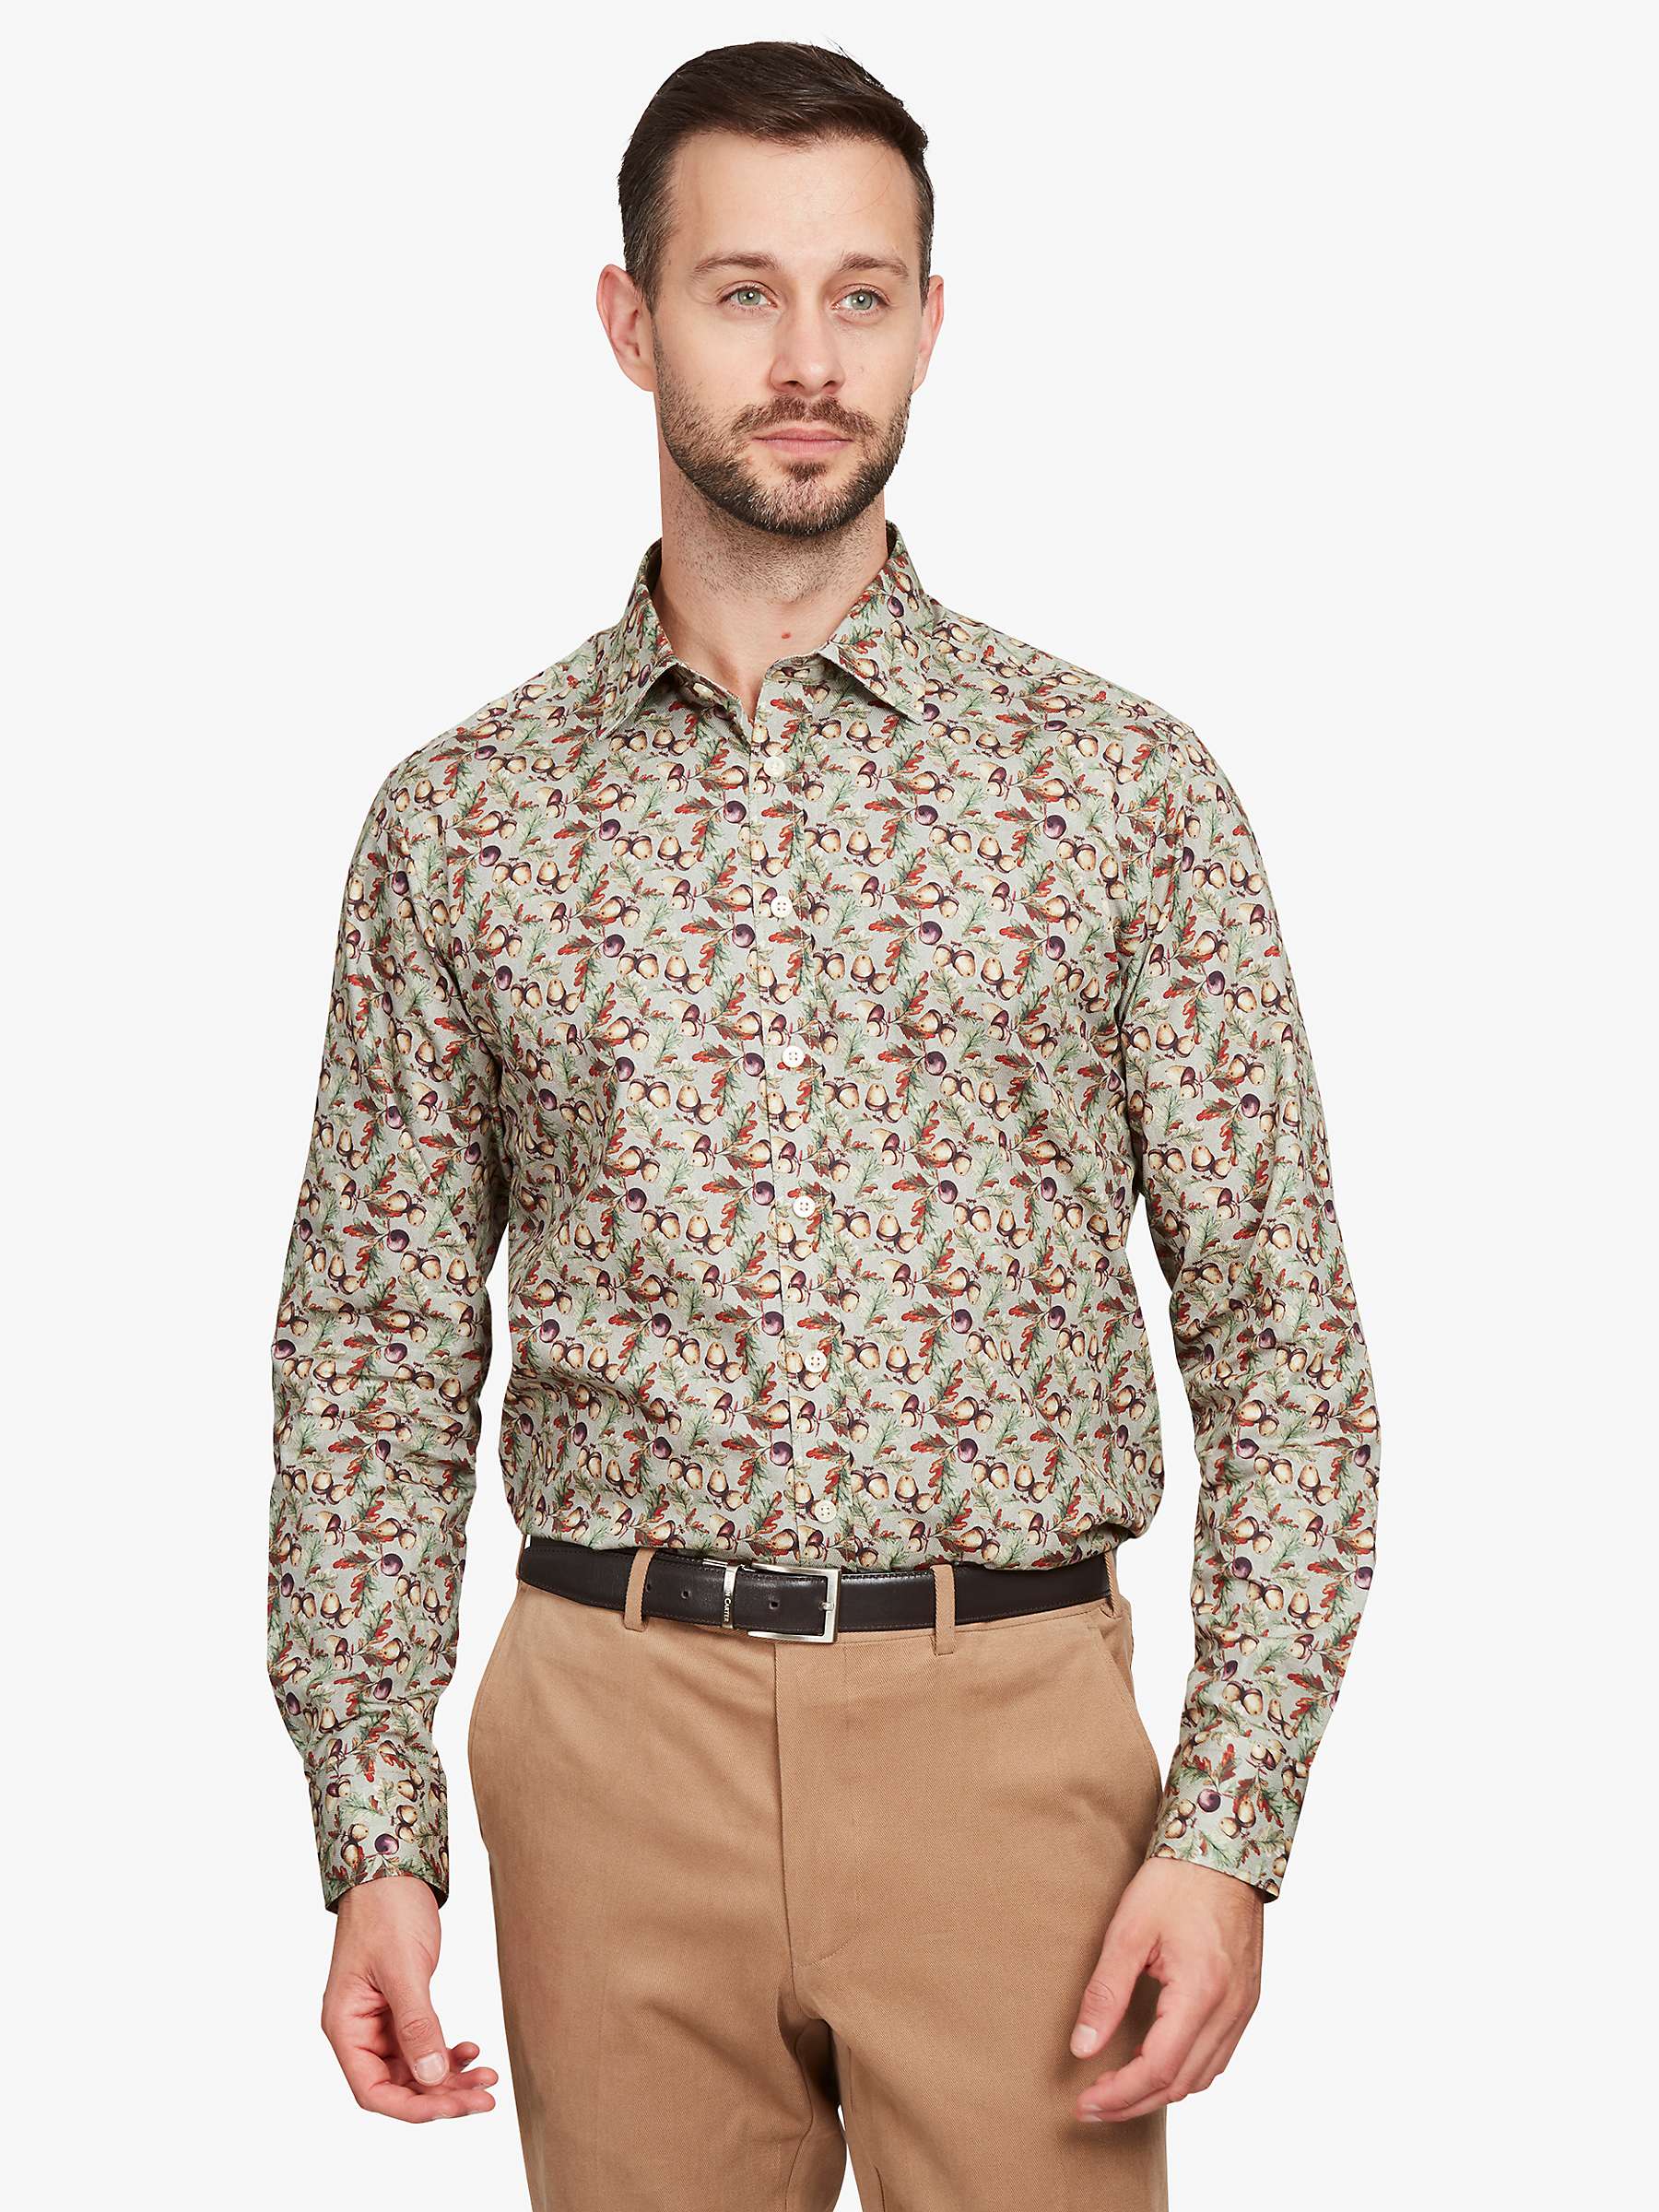 Buy Simon Carter Acorn Long Sleeve Shirt, Beige/Multi Online at johnlewis.com